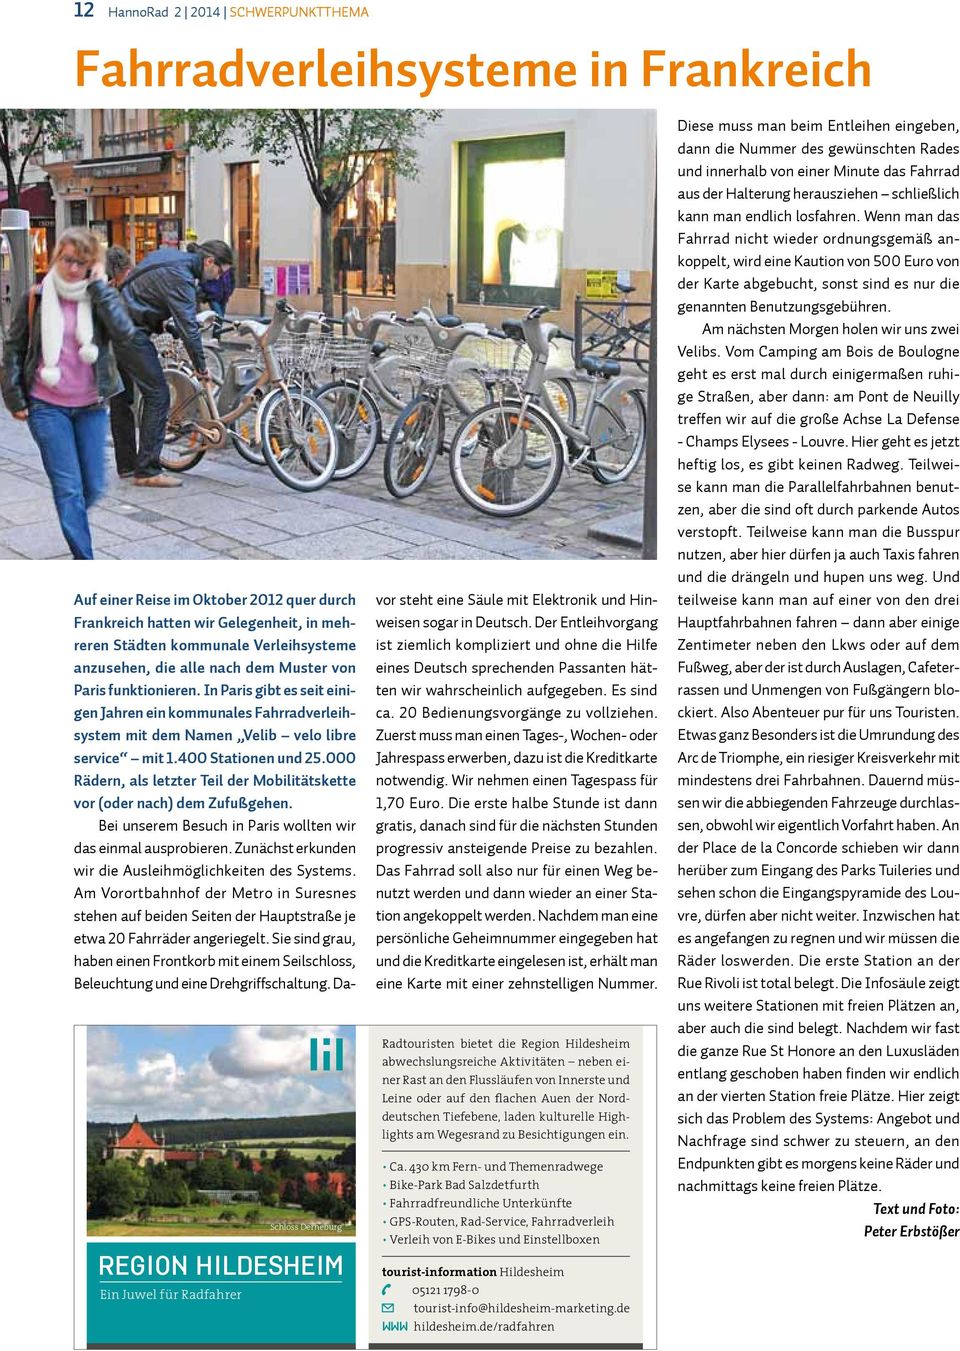 In Paris gibt es seit einigen Jahren ein kommunales Fahrradverleihsystem mit dem Namen Velib velo libre service mit 1.400 Stationen und 25.